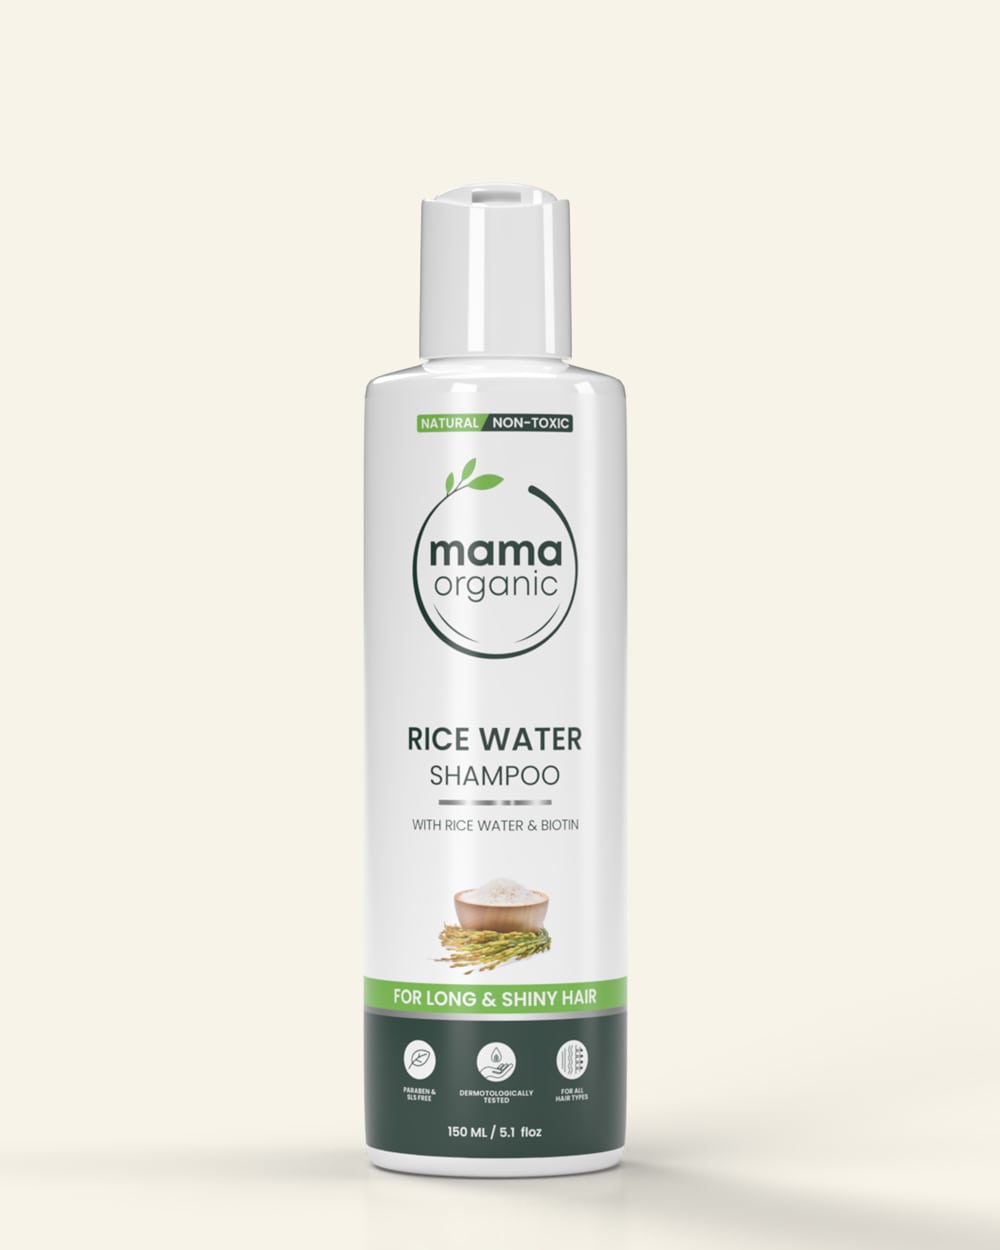 Rice Water Shampoo - 150ml for Long & Shiny Hair - Natural & Non Toxic